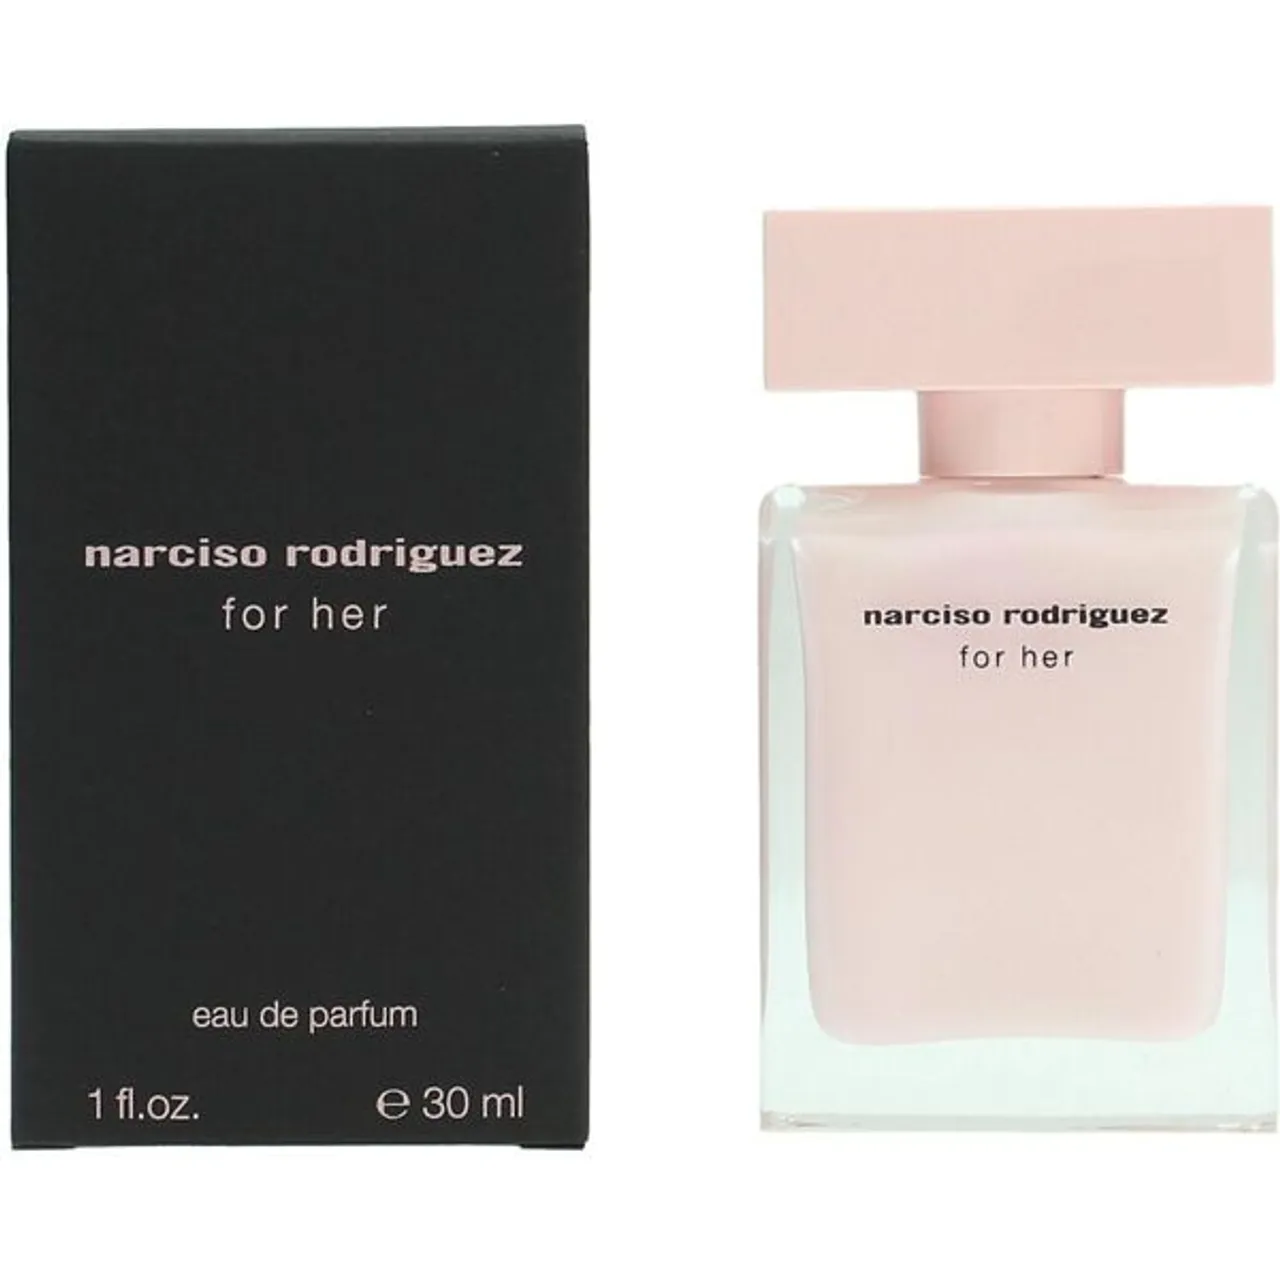 Eau de Parfum NARCISO RODRIGUEZ "For Her" Parfüms Gr. 30 ml, rosa Damen Eau de Parfum